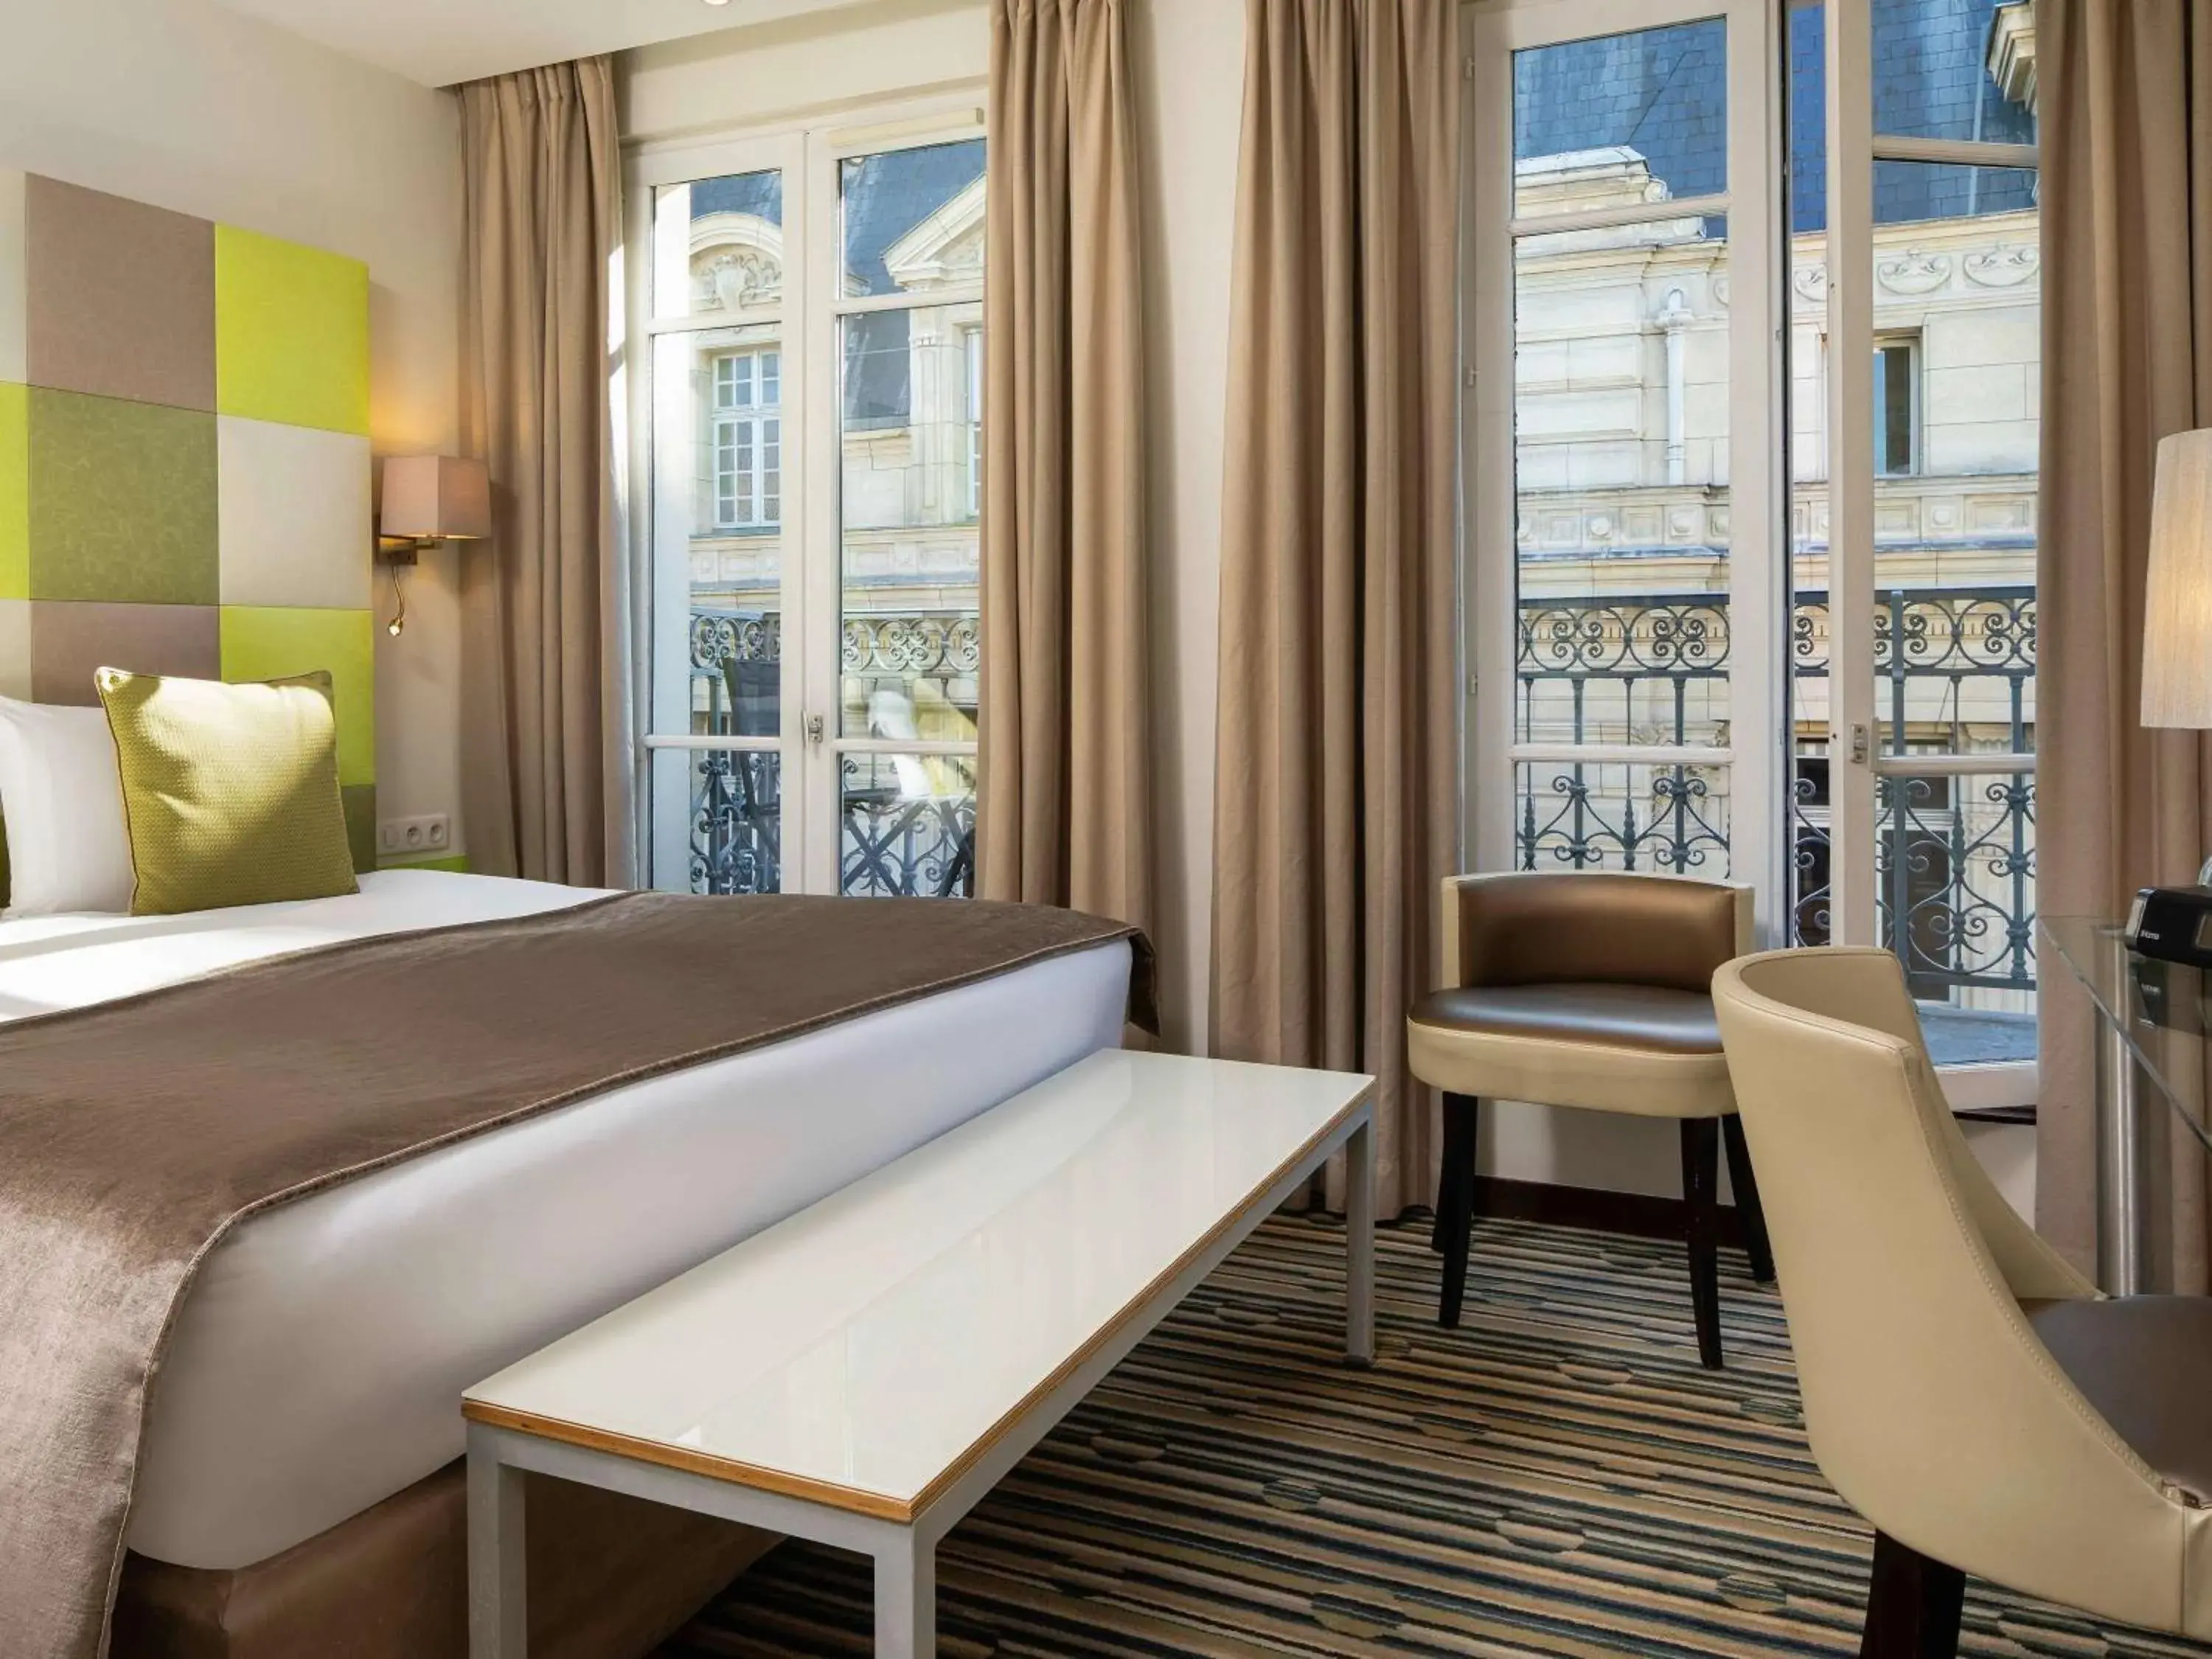 Photo of the whole room in Mercure Paris La Sorbonne Saint Germain des Pres Hotel